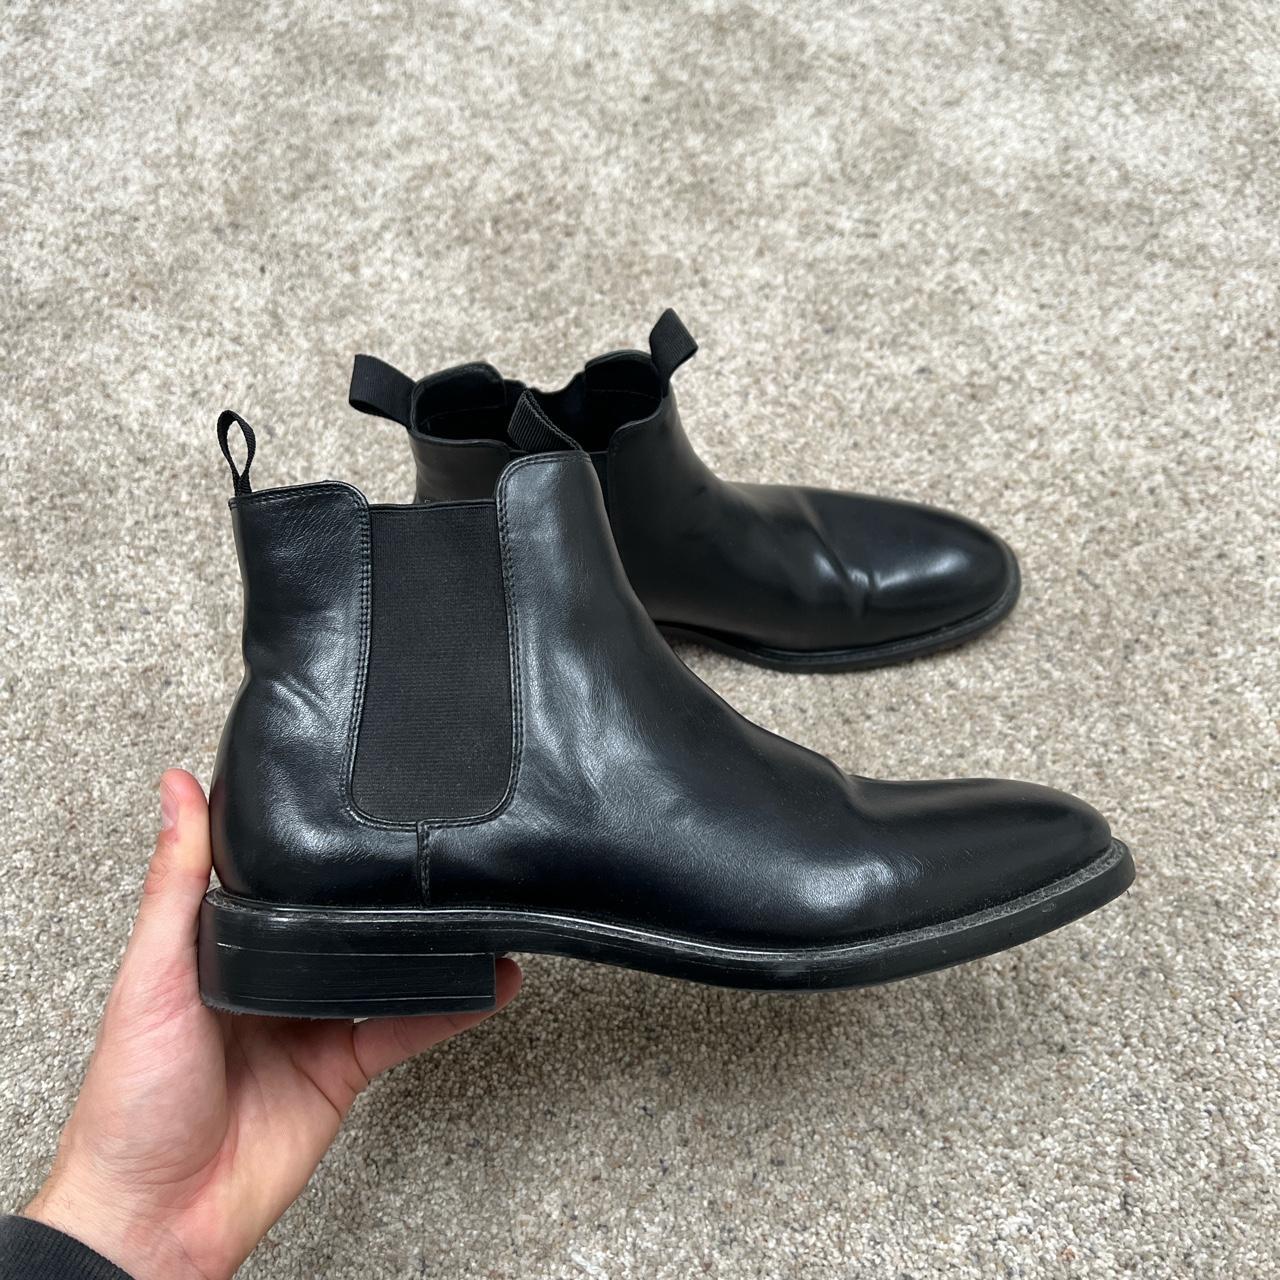 Black Chelsea Boots - Size 10.5 Single color ankle... - Depop